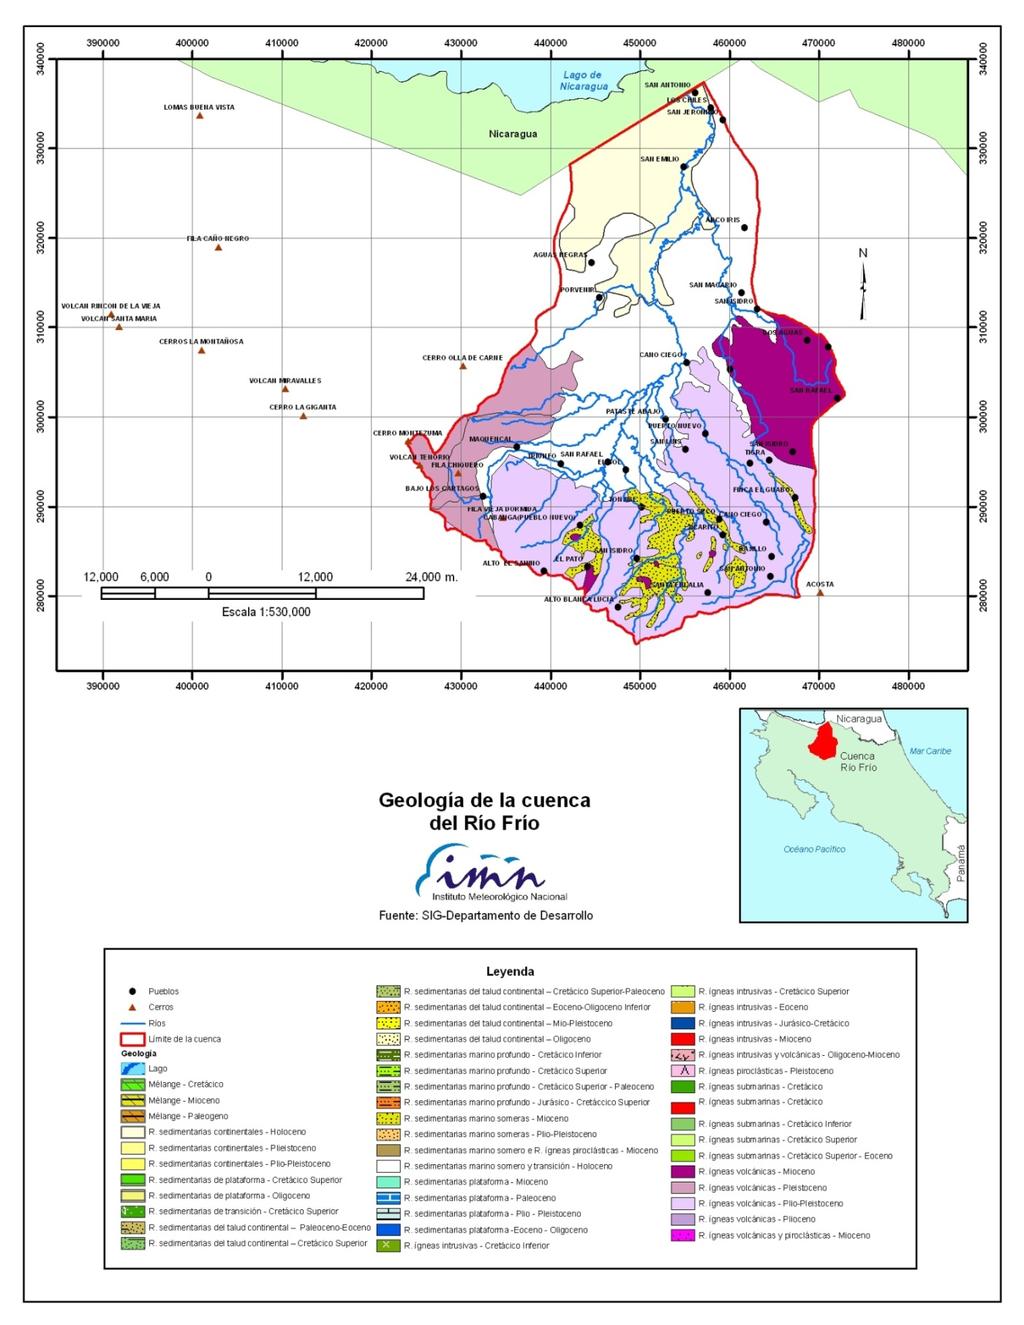 En la Figura 3 se muestran las clasificaciones geológicas para las diferentes áreas de la cuenca.